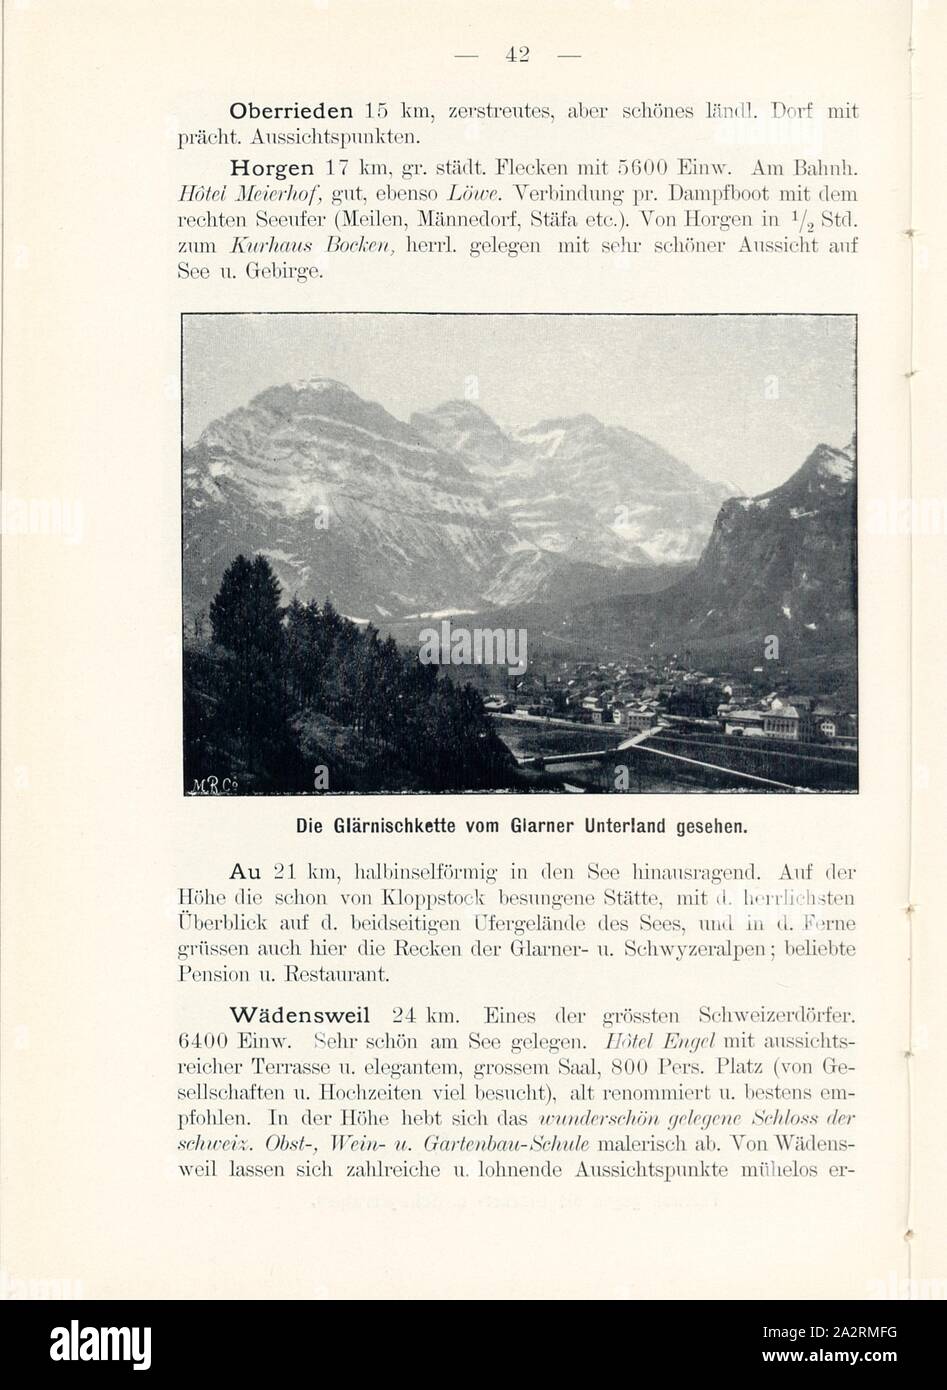 The Glärnischkette seen from Glarner Unterland, Glärnisch in the Canton of Glarus, Signed: M.R.C, Fig. 43, p. 42, Meisenbach, Riffarth und Co. (imp.), 1900, J. Knobel: Illustrierter Reisebegleiter für die Alpenstrasse des Klausen und ihre Zufahrtslinien. Glarus: Buchdruckerei J. Spälti, 1900 Stock Photo